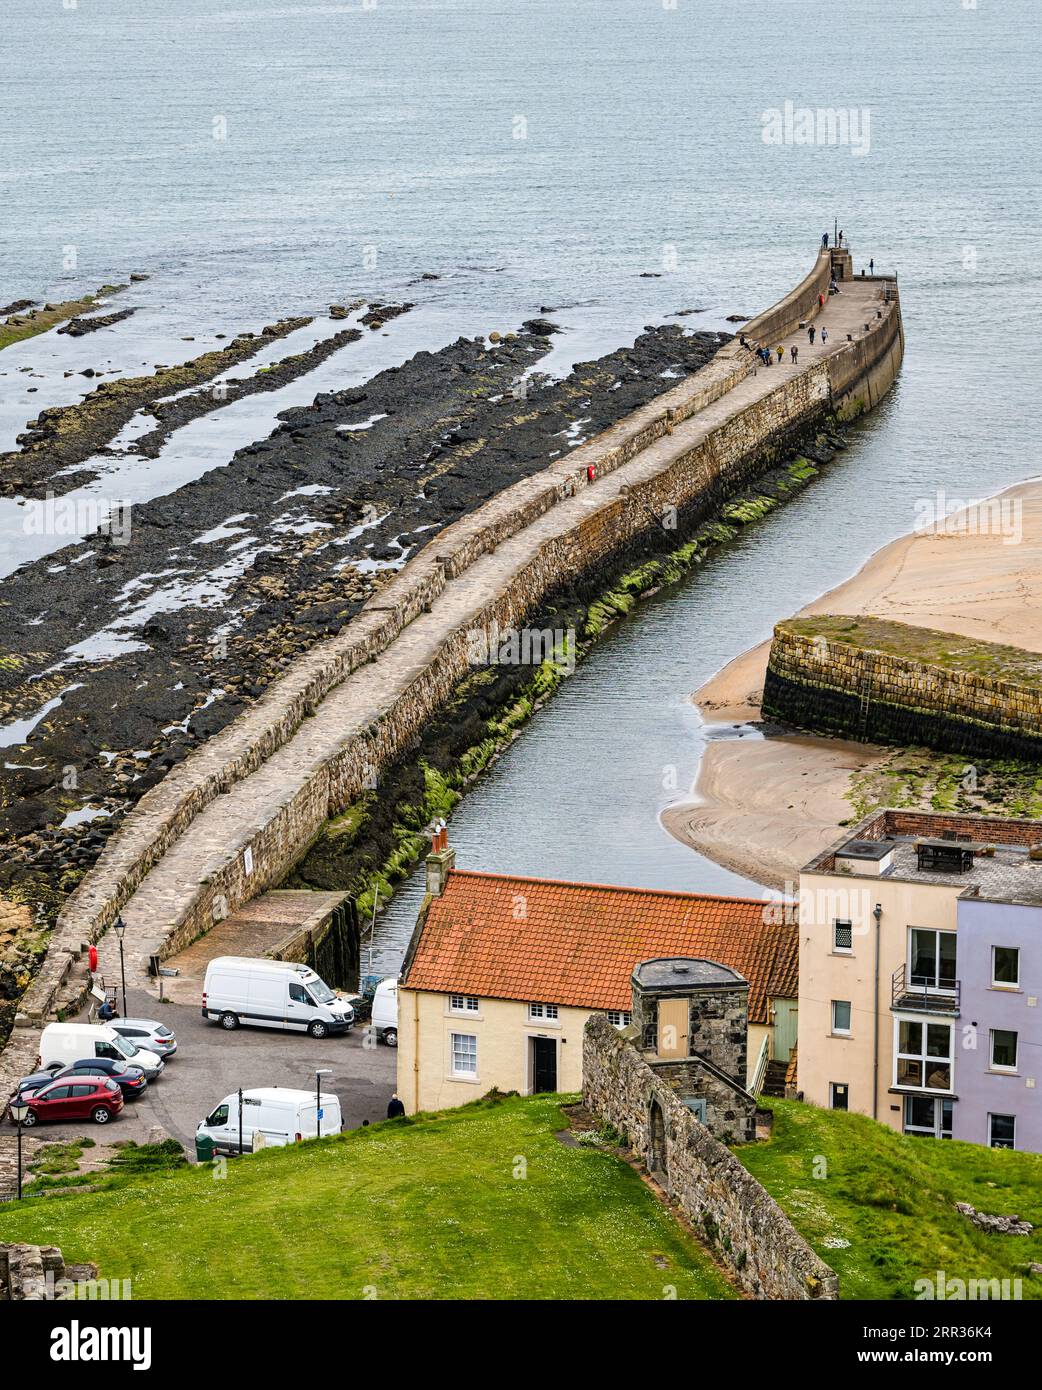 Vista dall'alto del porto e del lungo molo in pietra, St Andrews, Fife, Scozia, Regno Unito Foto Stock